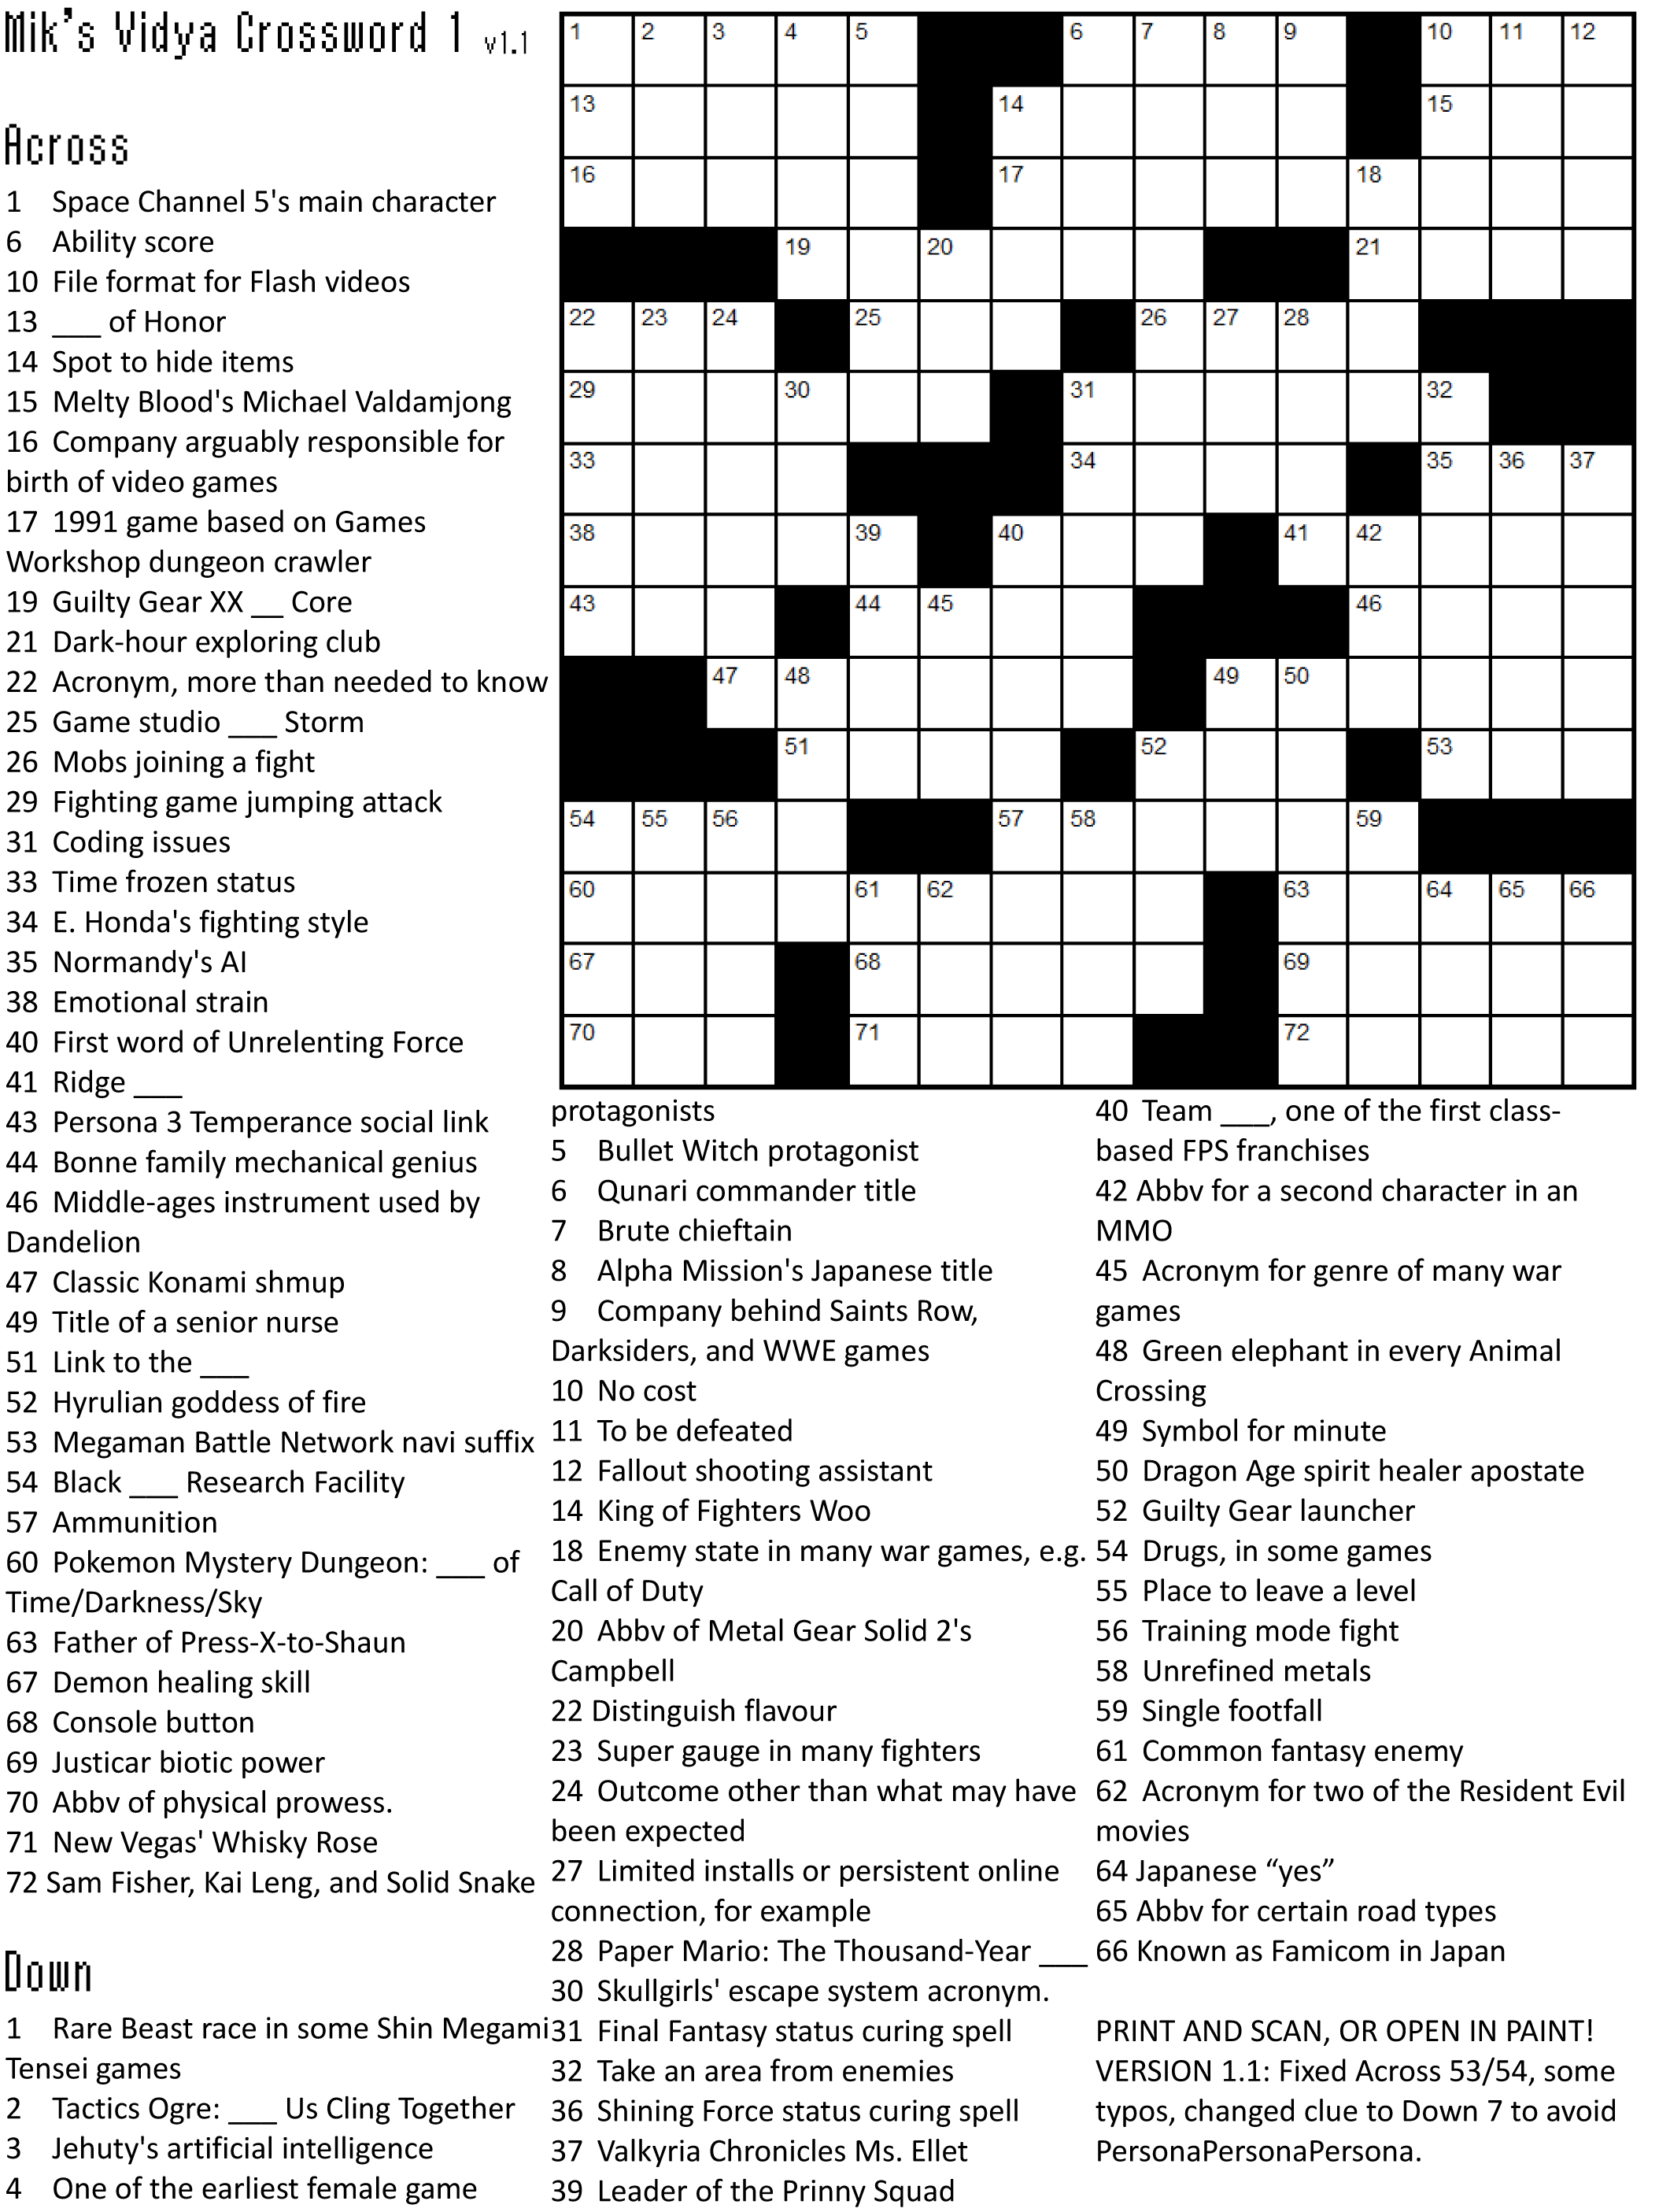 Crossword Puzzle Games | Crossword Puzzle Printable - Printable Crossword Puzzle Games